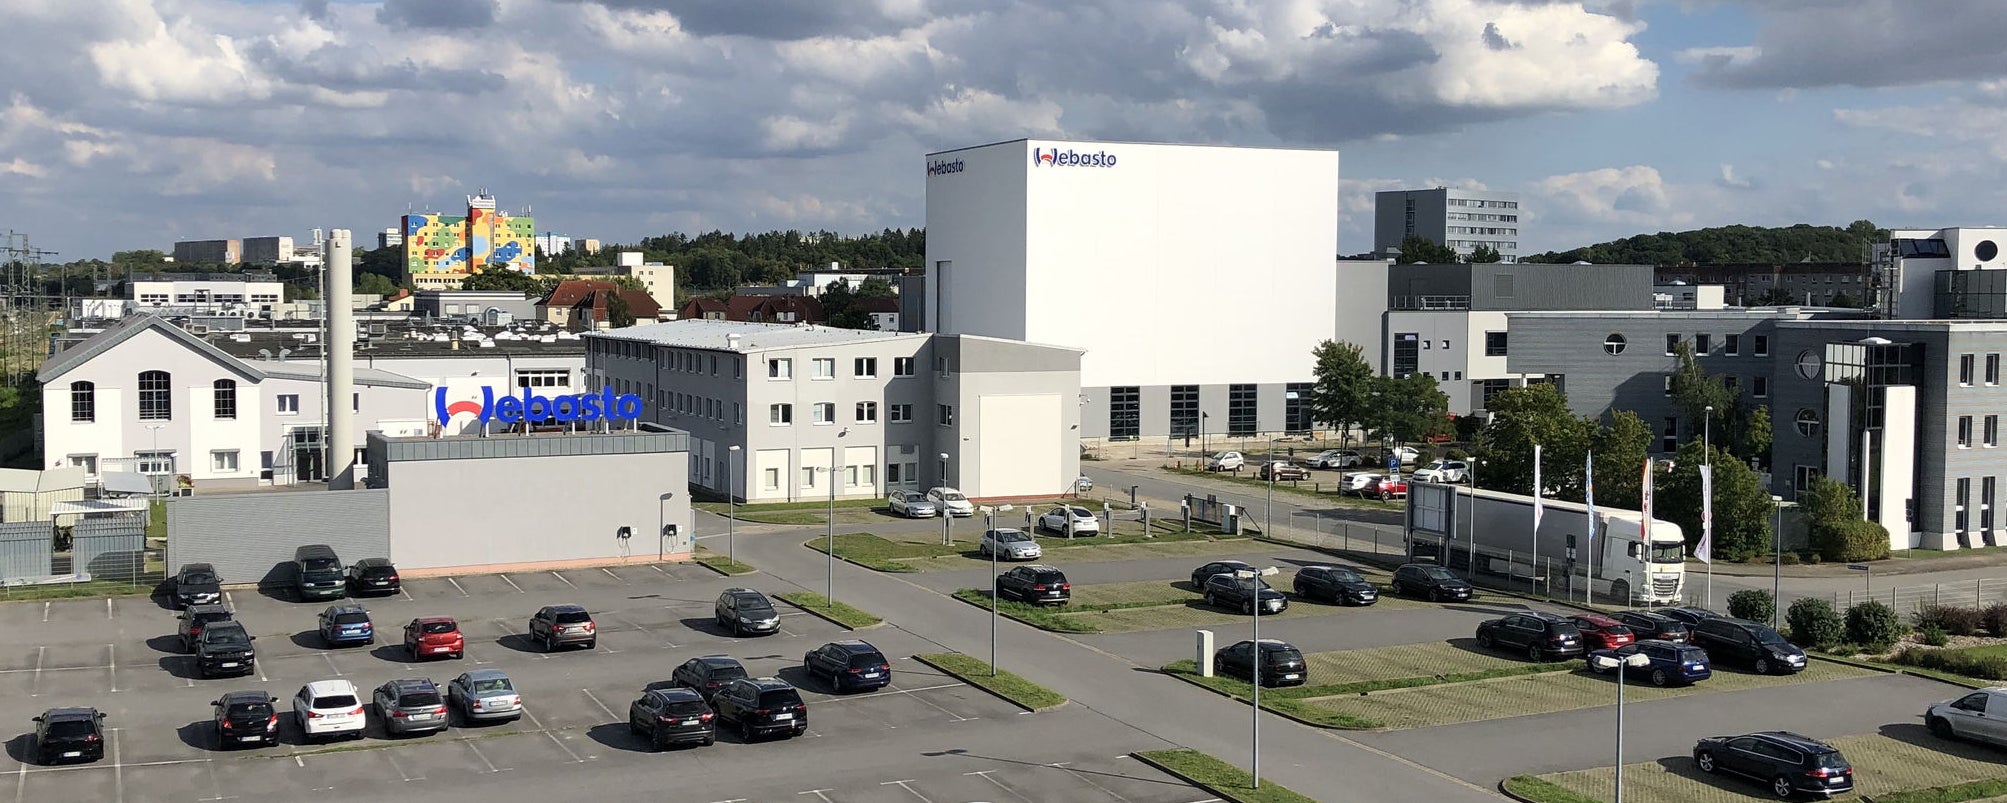 Webasto Logistic Warehouse in Neubrandenburg, Germany